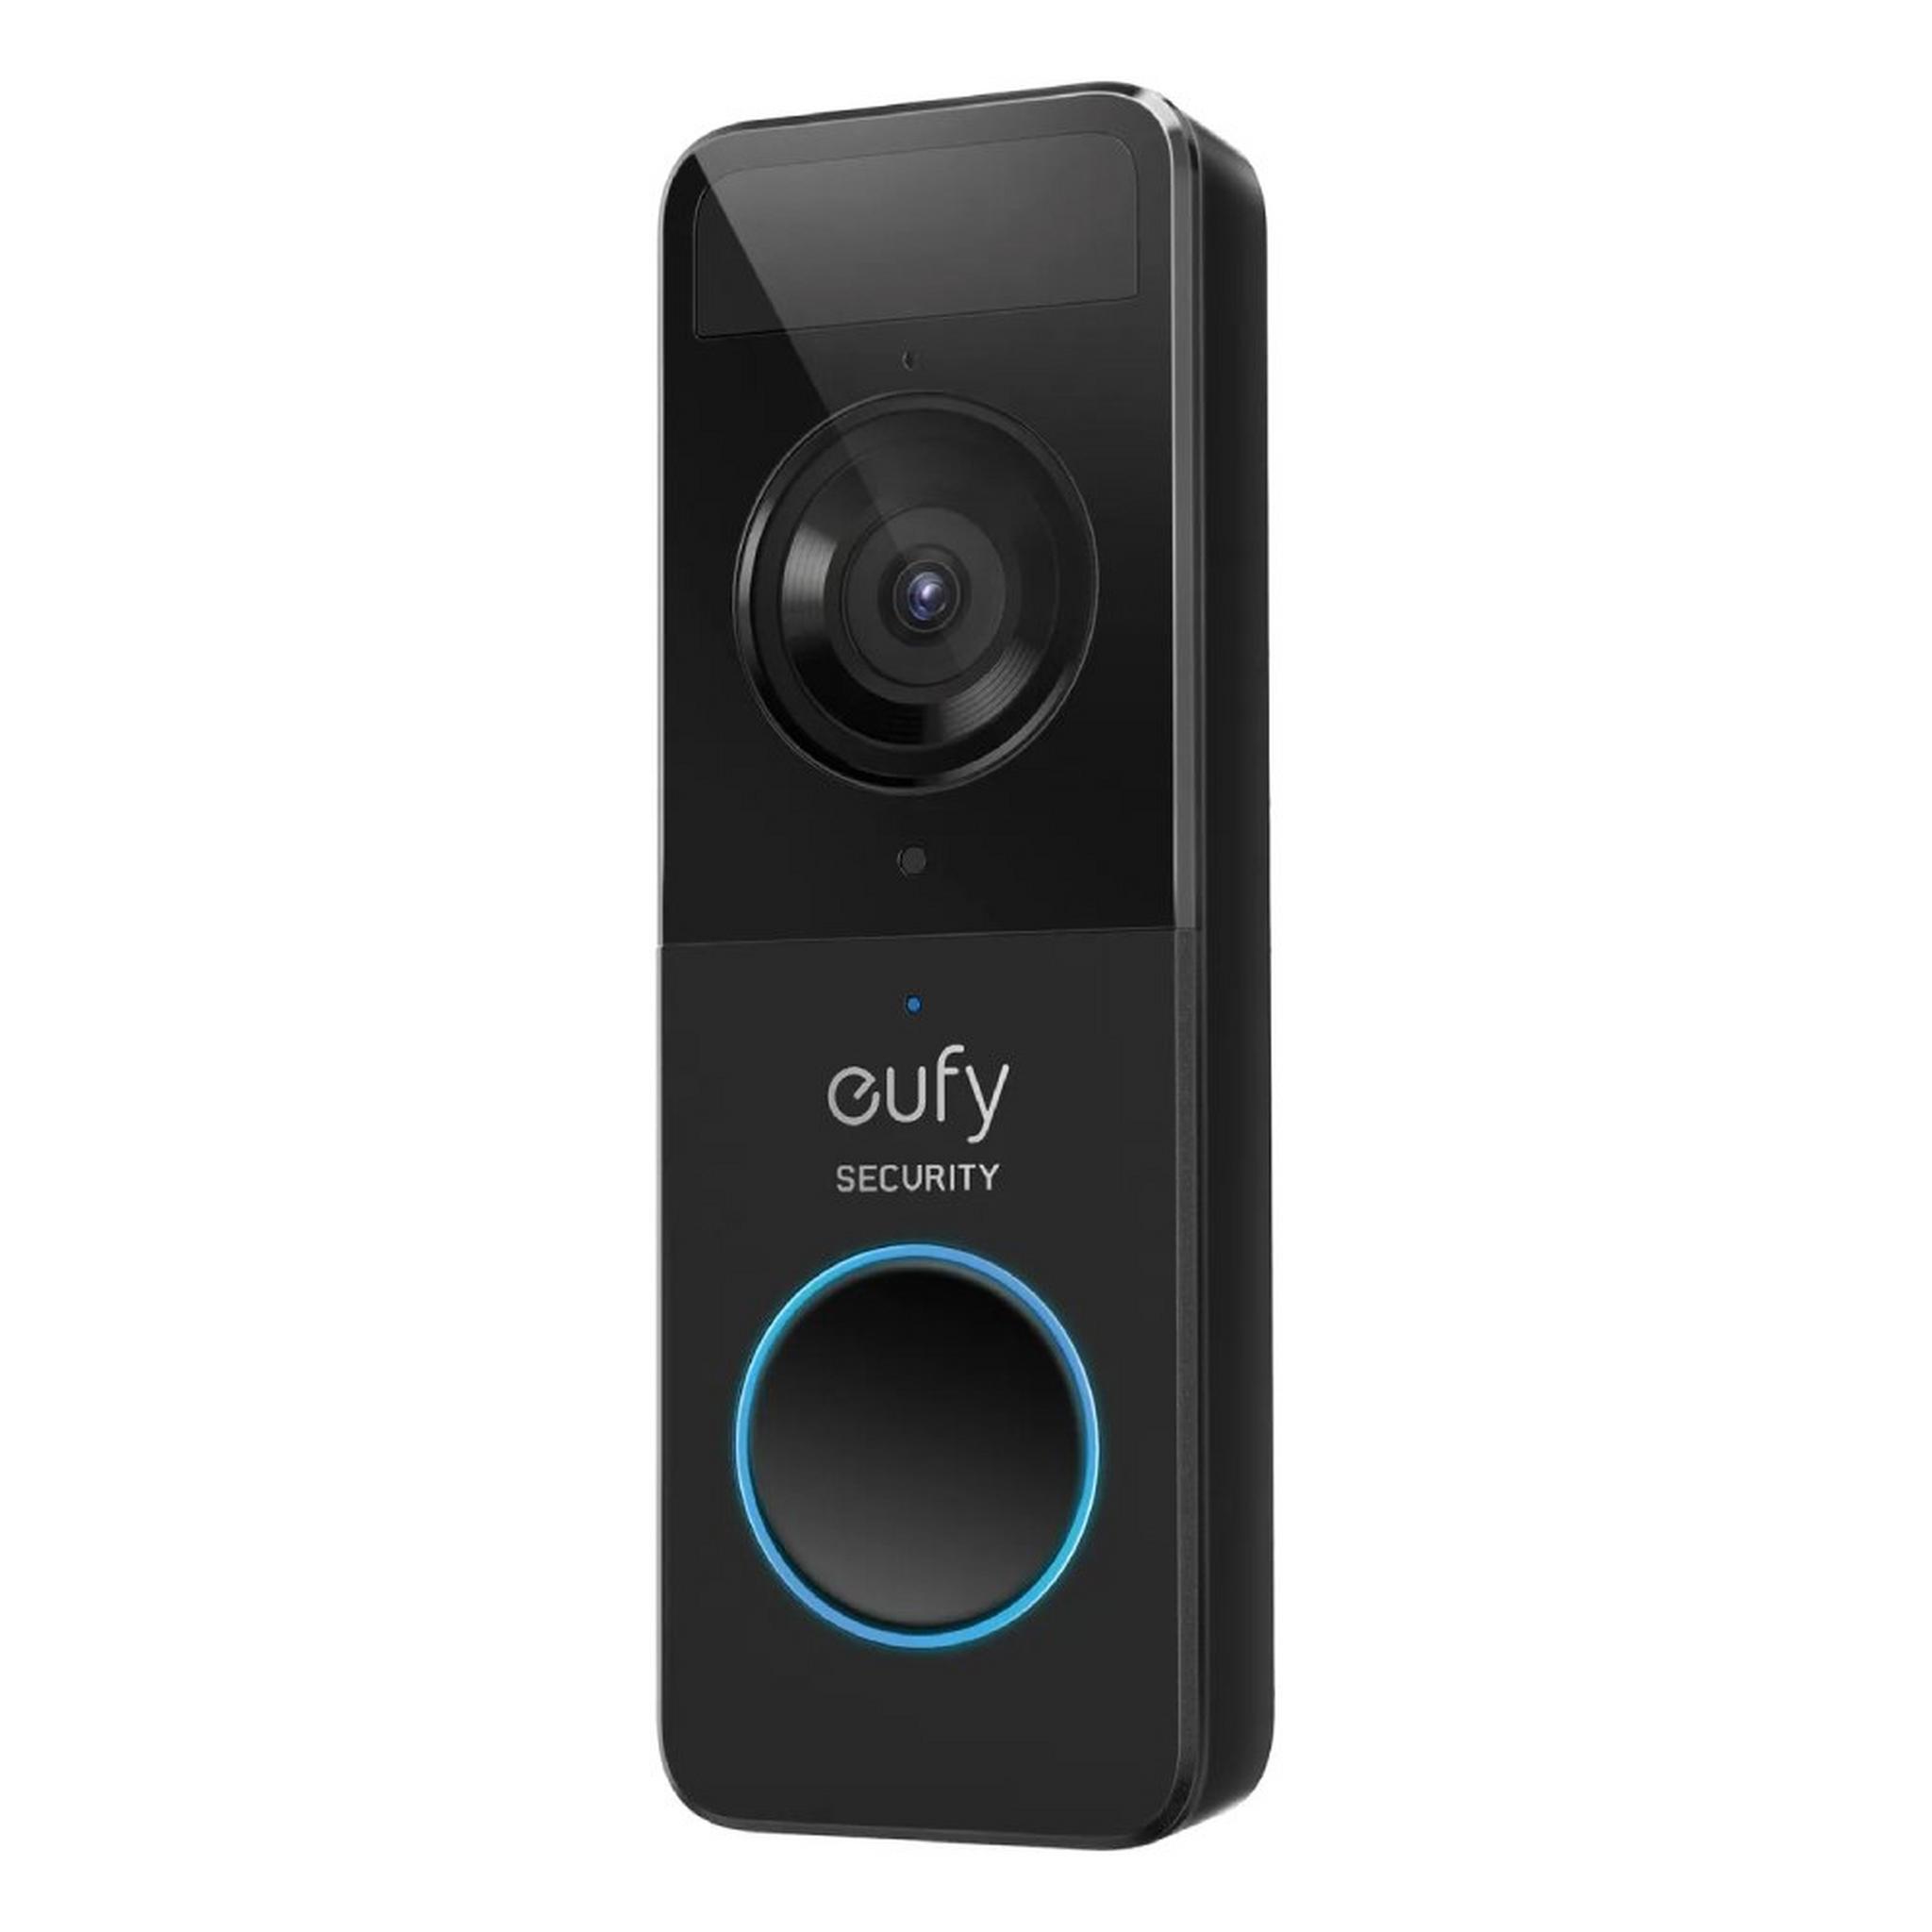 Eufy Video Doorbell Full HD 1080p - Black